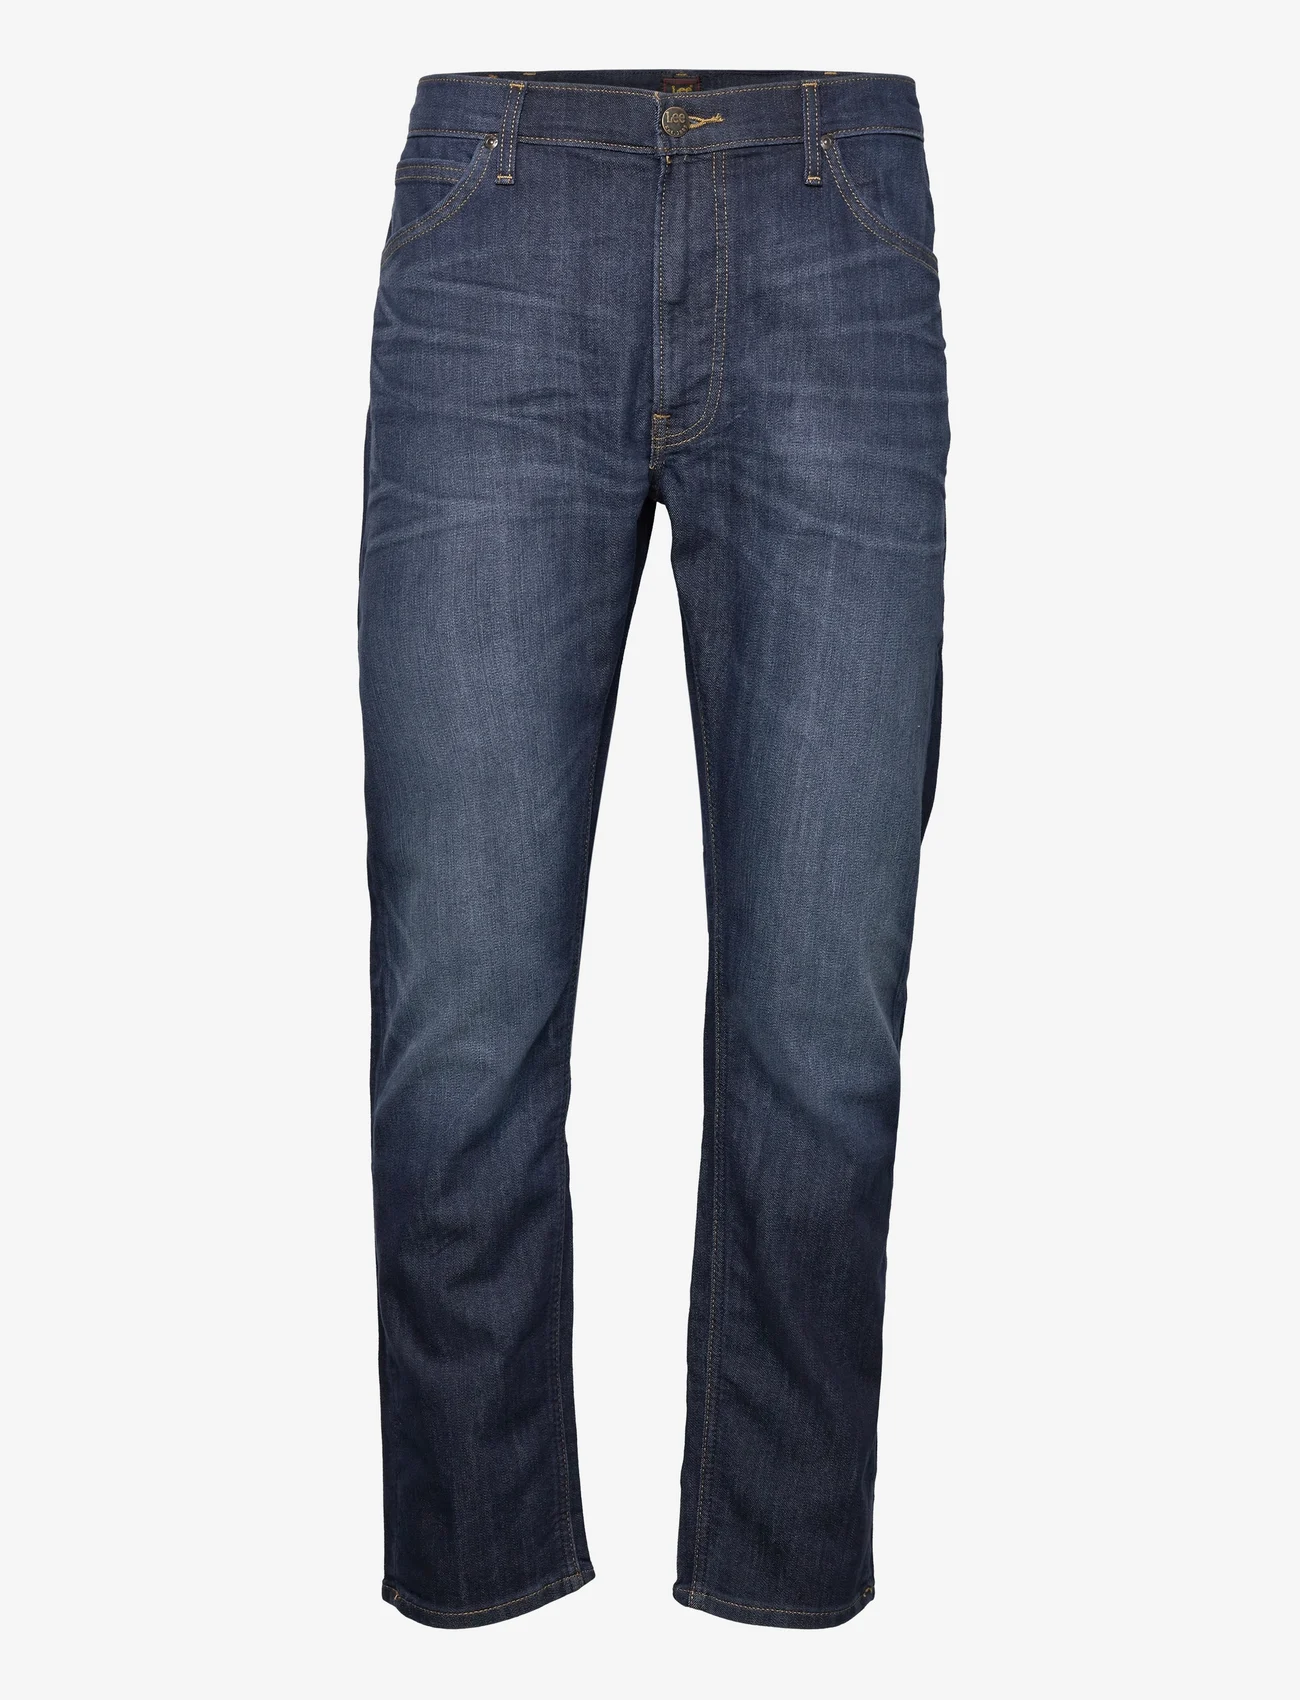 Lee Jeans - DAREN ZIP FLY - regular jeans - strong hand - 0